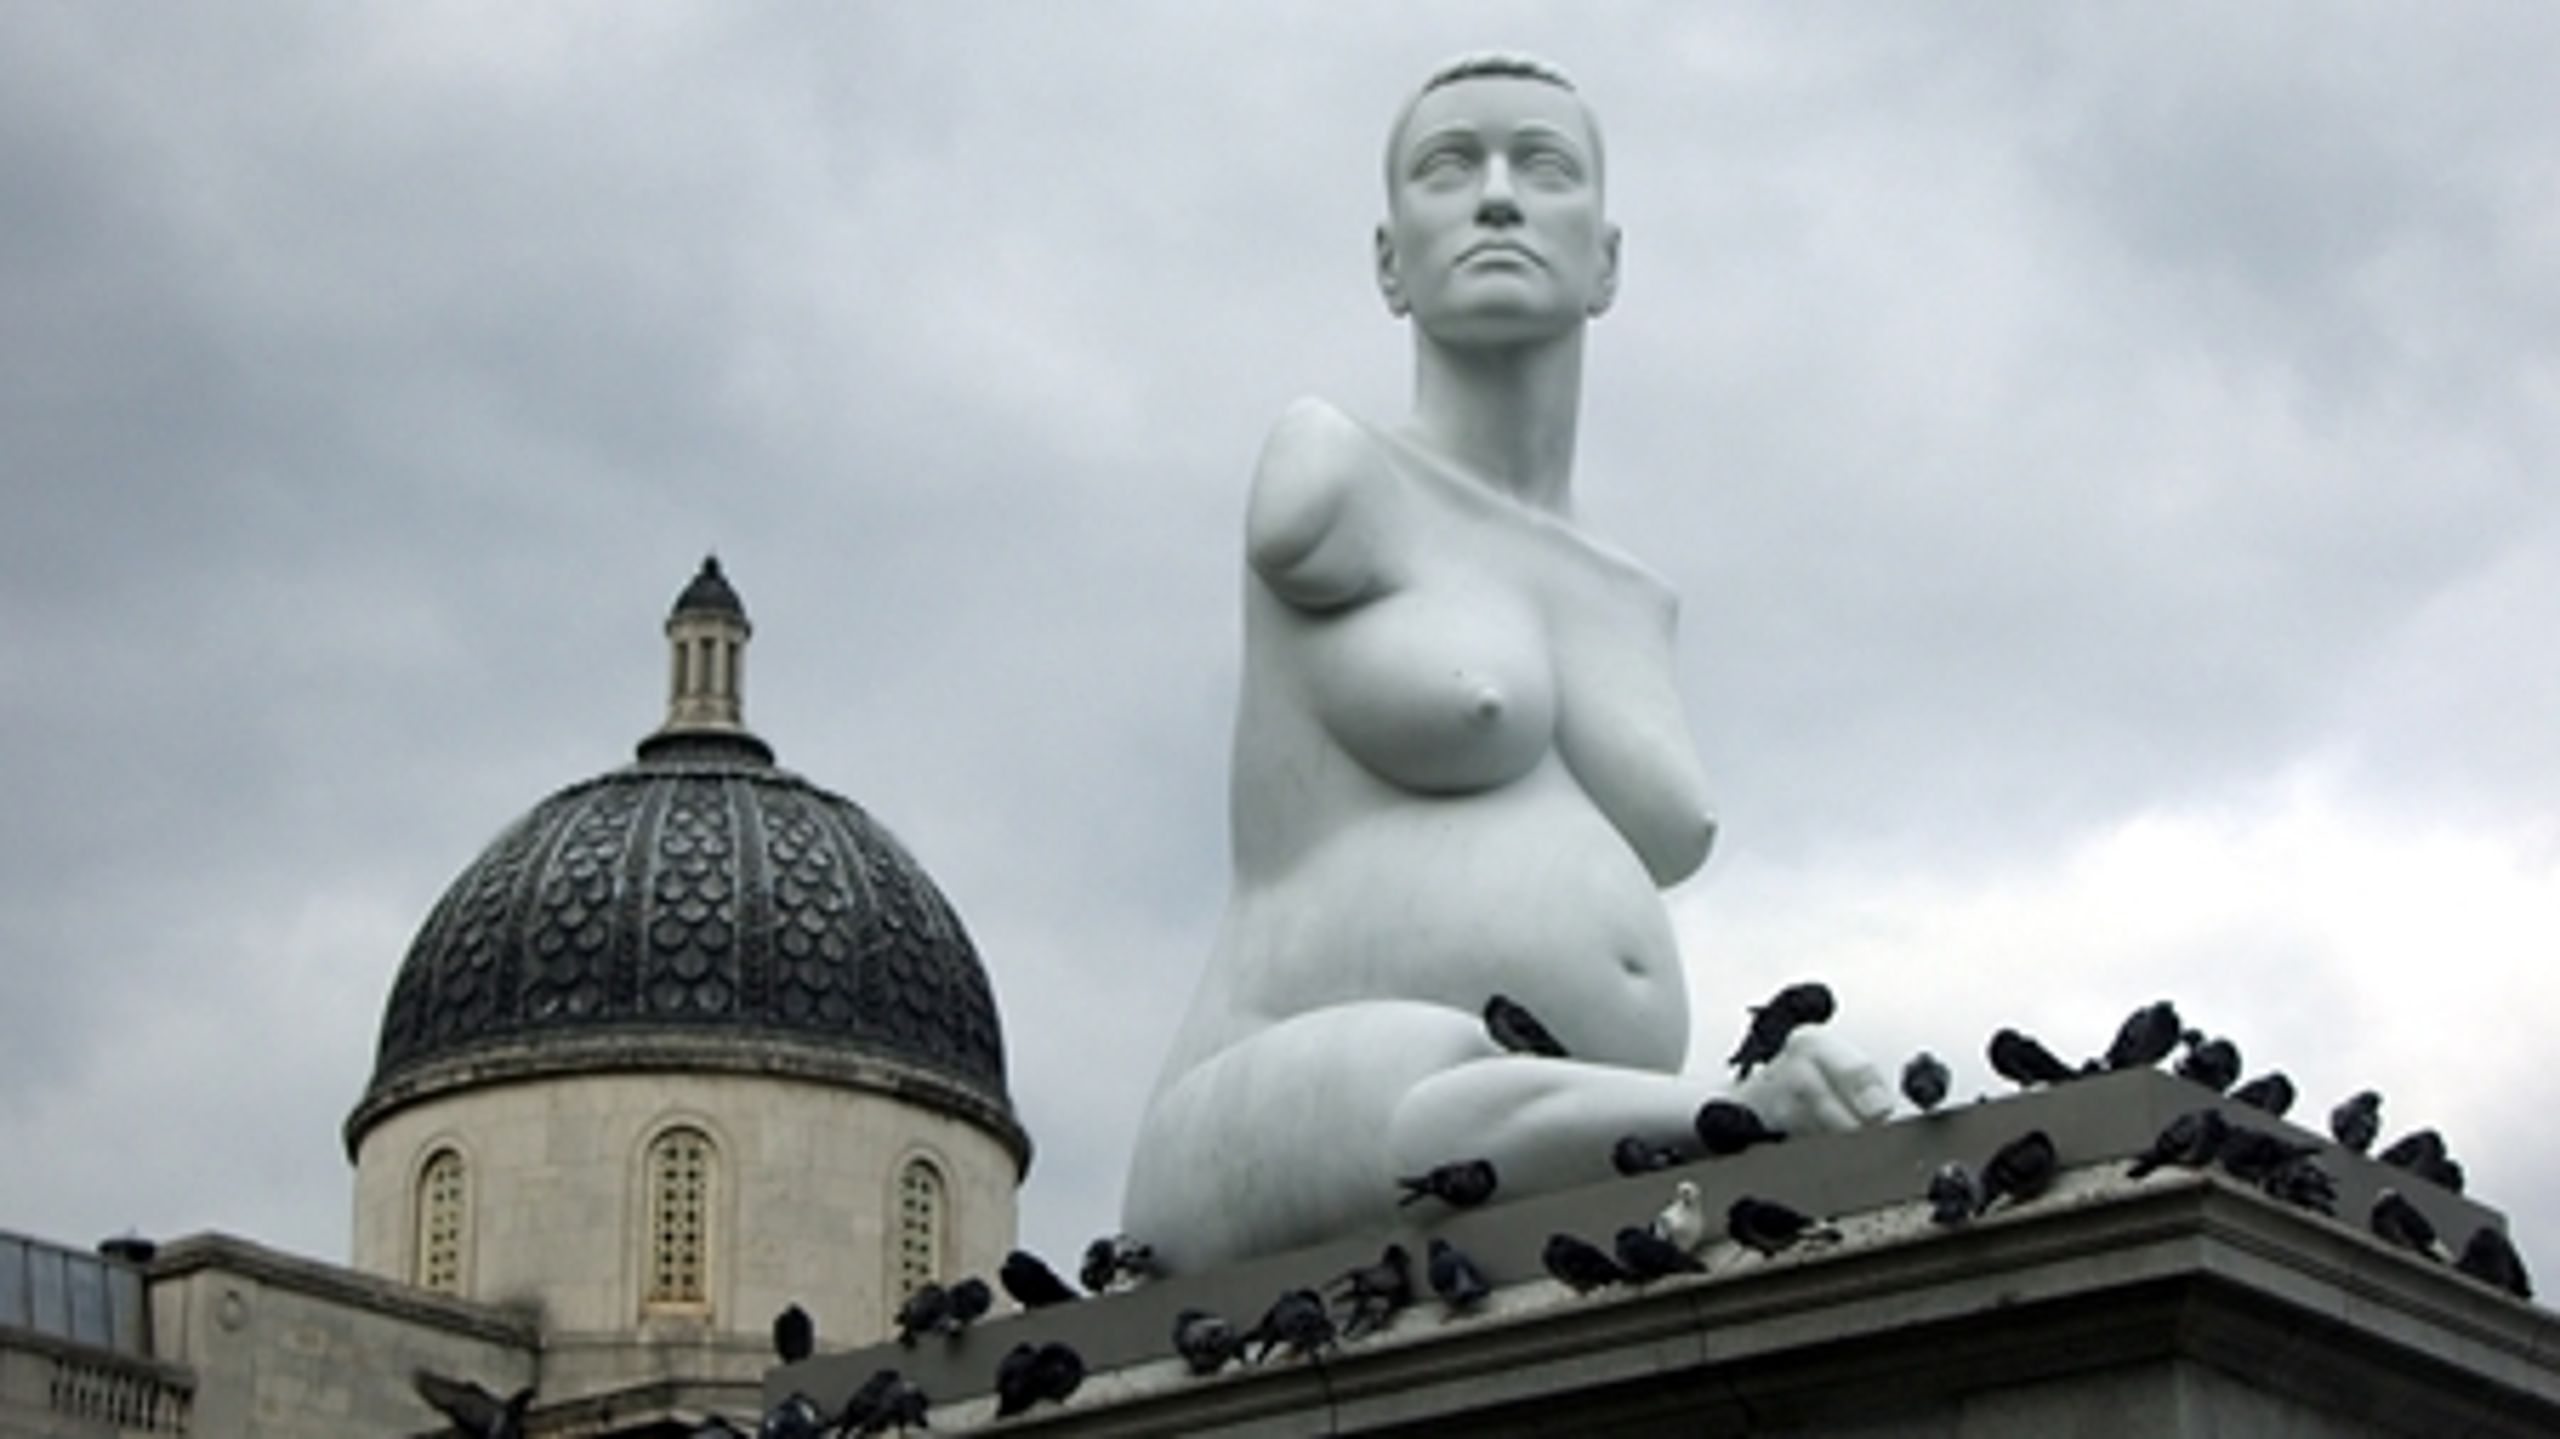 Briten Marc Quinn, der blandt andet står bag Trafalger Squares enorme statue af den gravide handicappede kunstner Alison Lapper, er udset til at skulle forevige Danmarks tidligere statsminister.